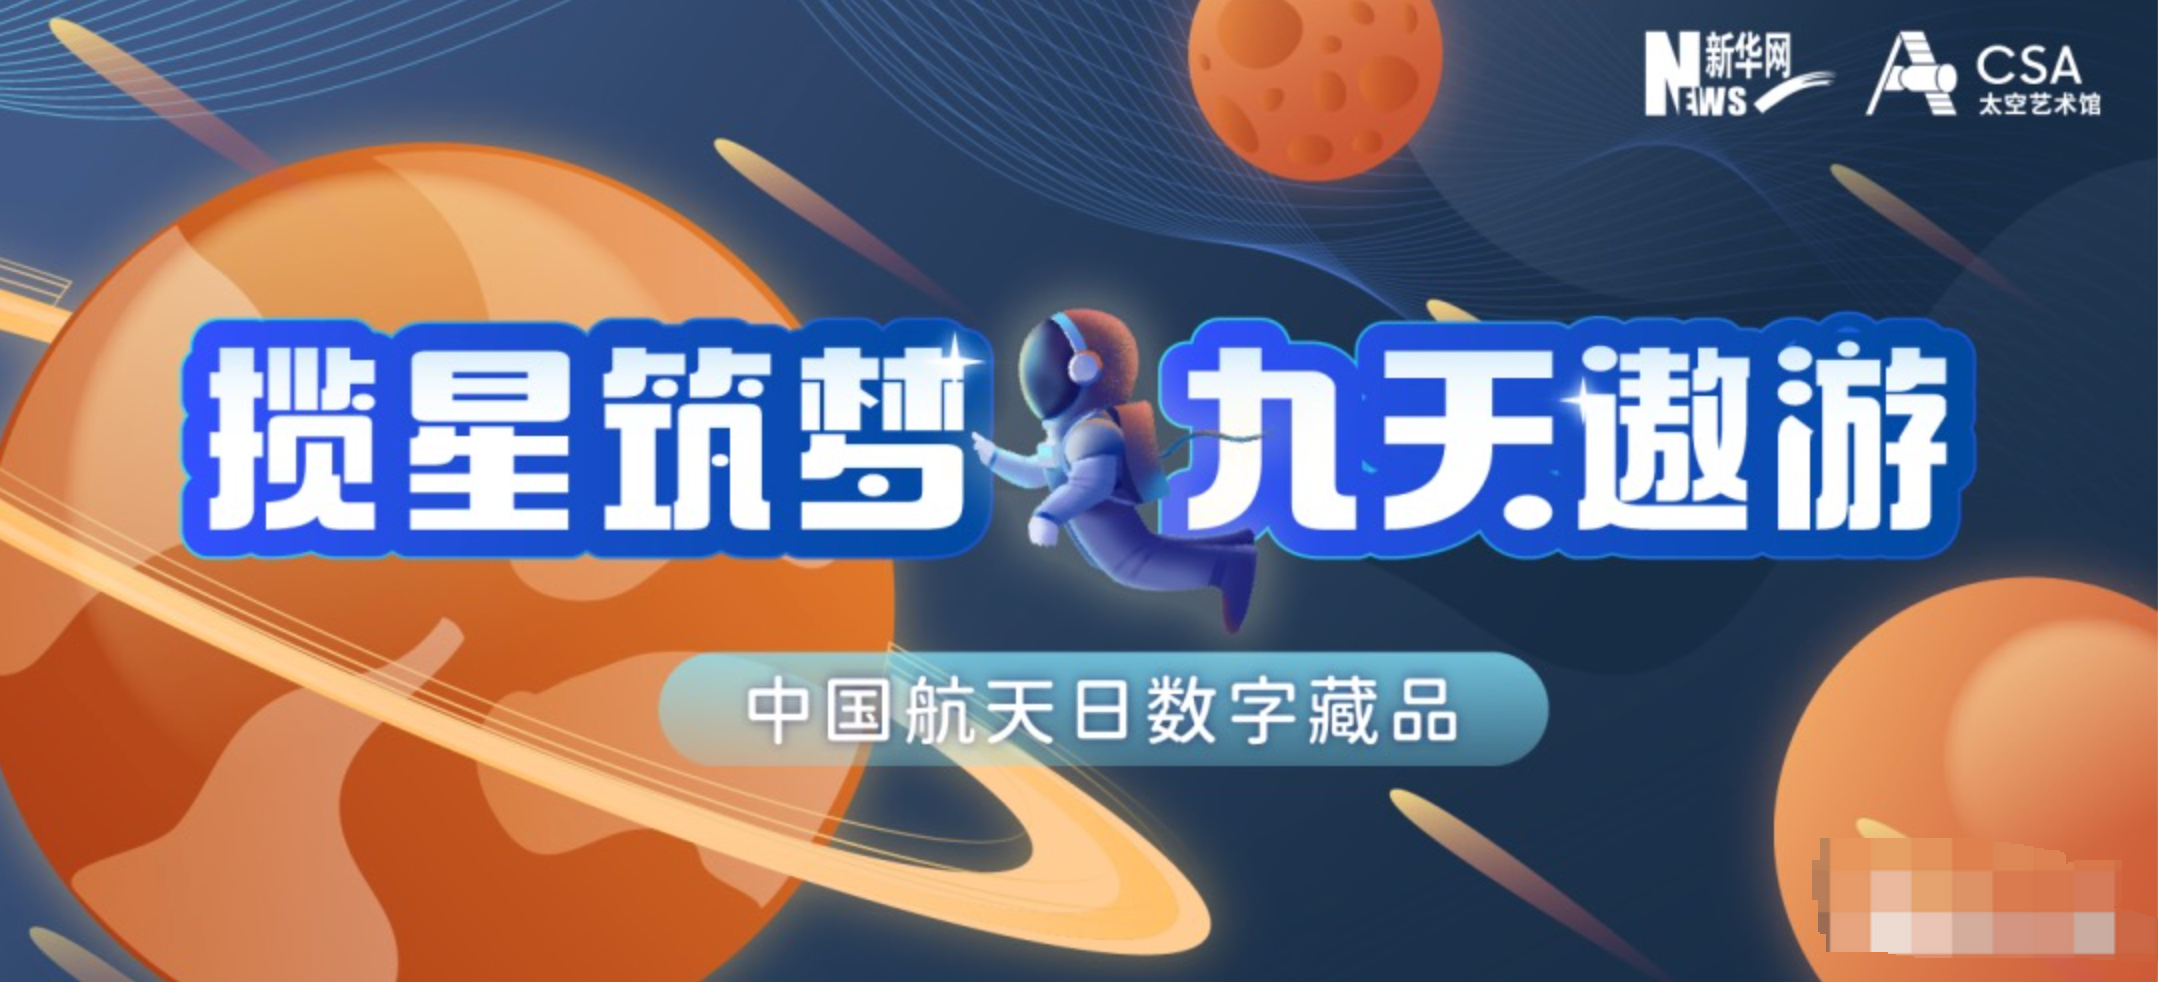 科技赋能艺术!新华网联合太空艺术馆、万户创世将发售中国航天日数字藏品!